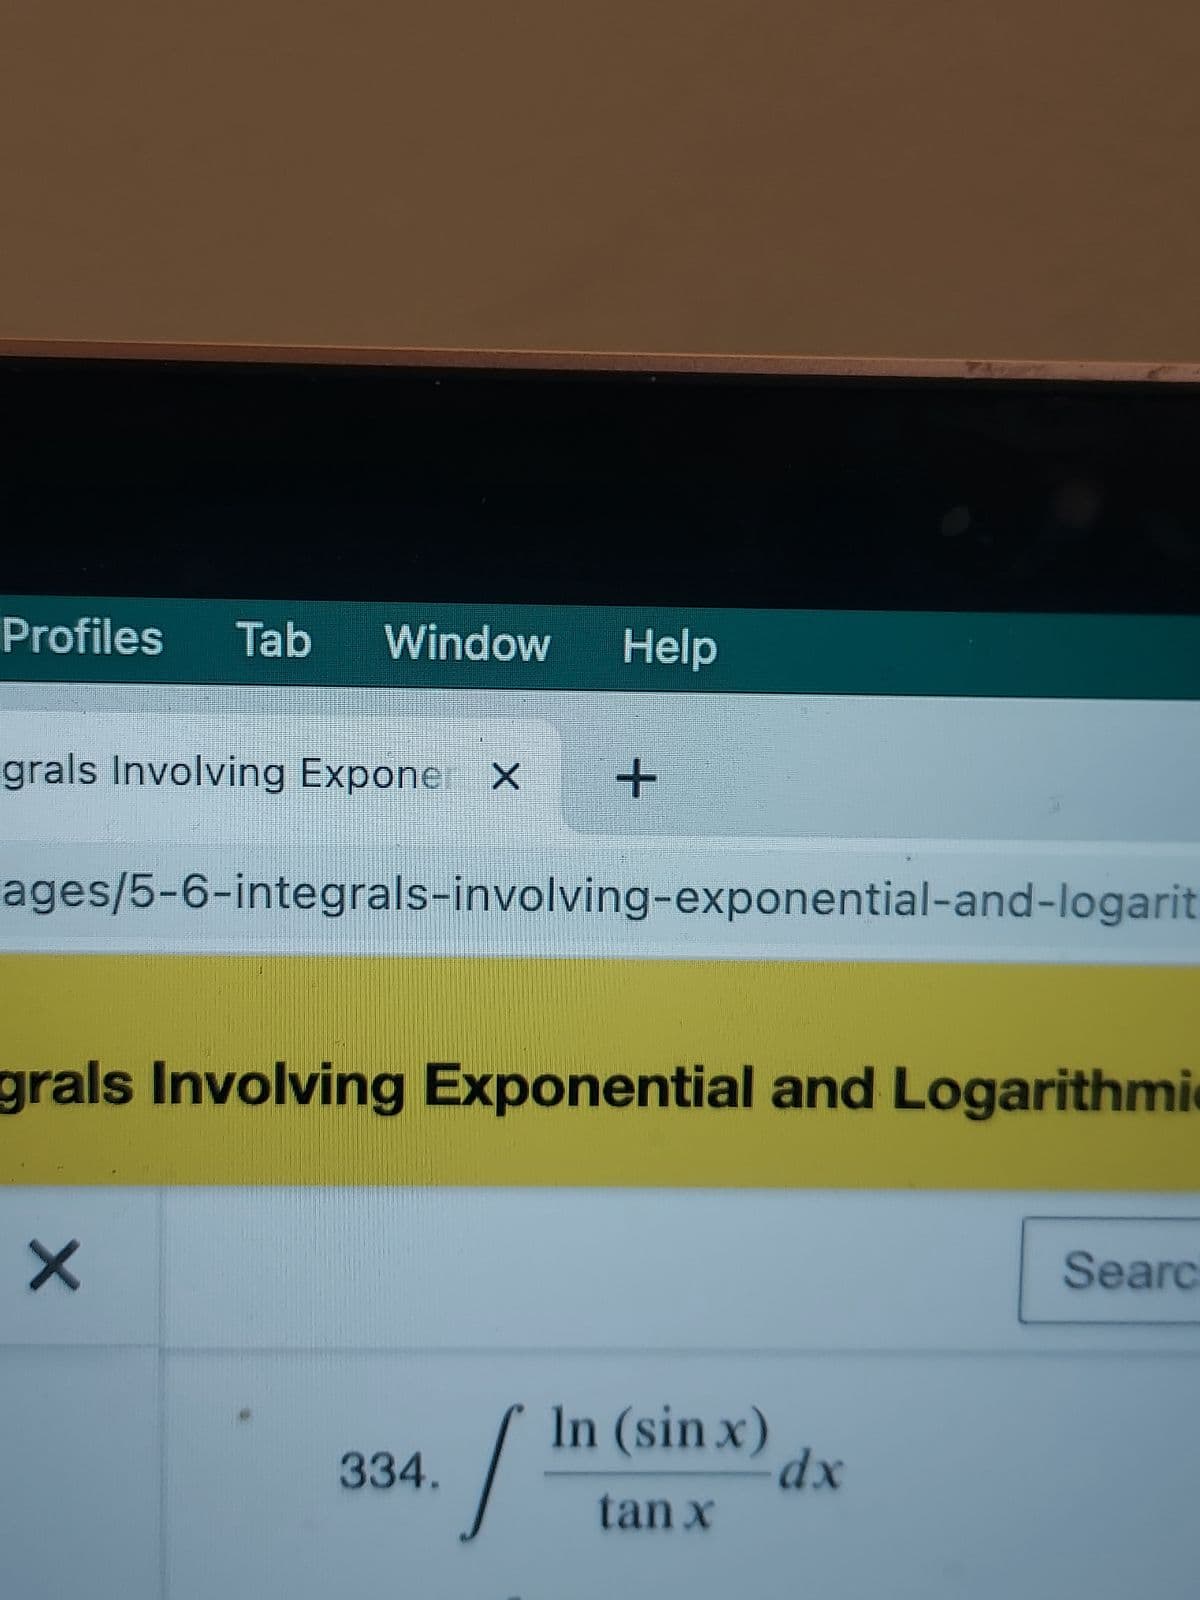 Profiles Tab Window Help
grals Involving Expone X
ages/5-6-integrals-involving-exponential-and-logarit
grals Involving Exponential and Logarithmi
X
+
334.
./
In (sin x)
tan x
dx
Searc